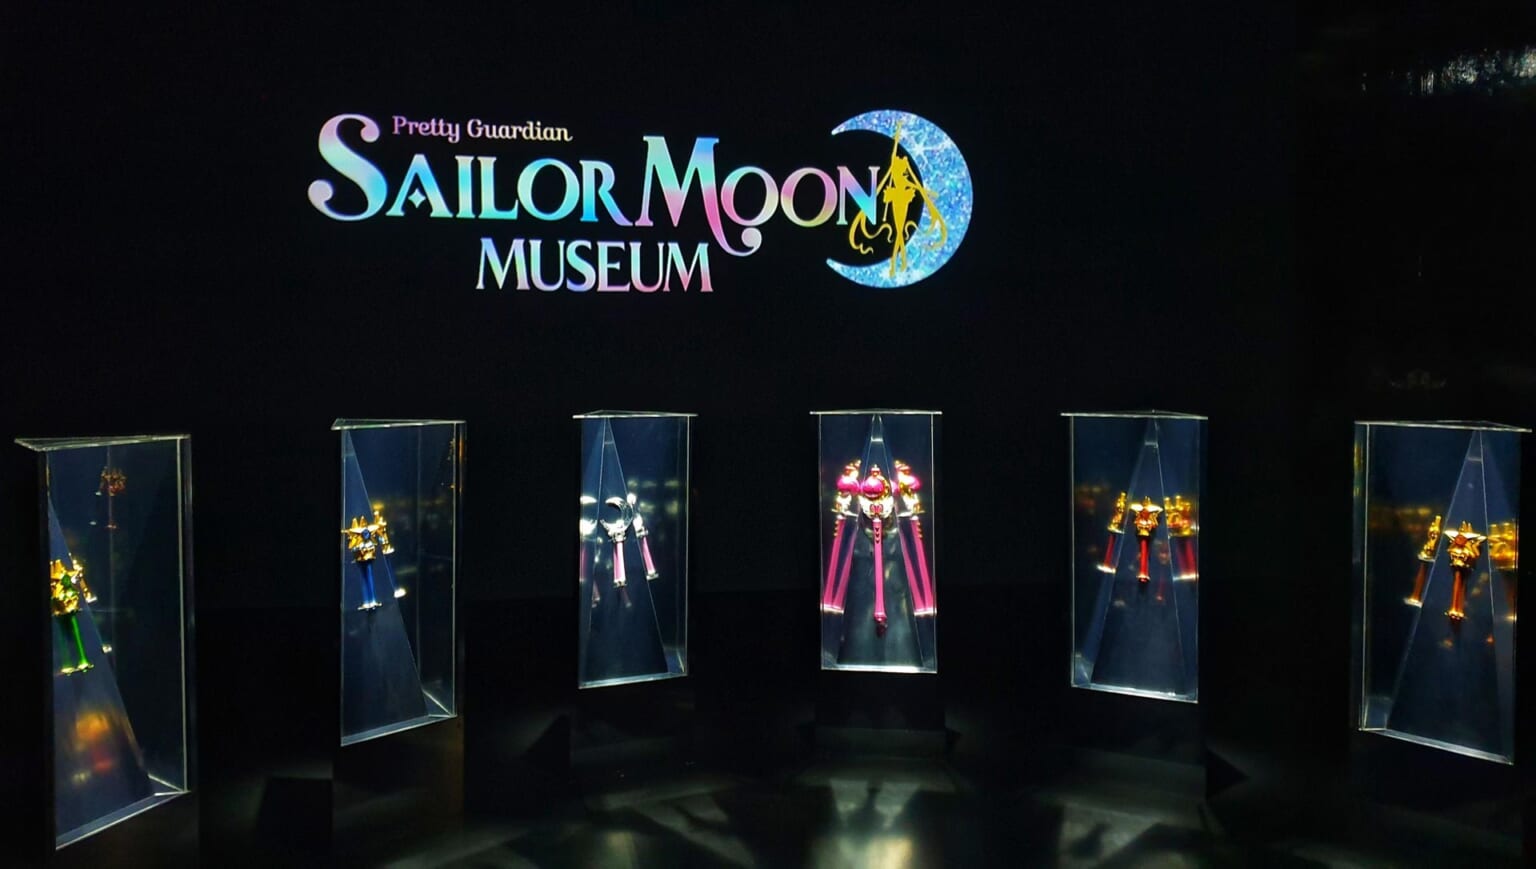 Sailor Moon Museum Visit Japan's Largest Sailor Moon Exhibition